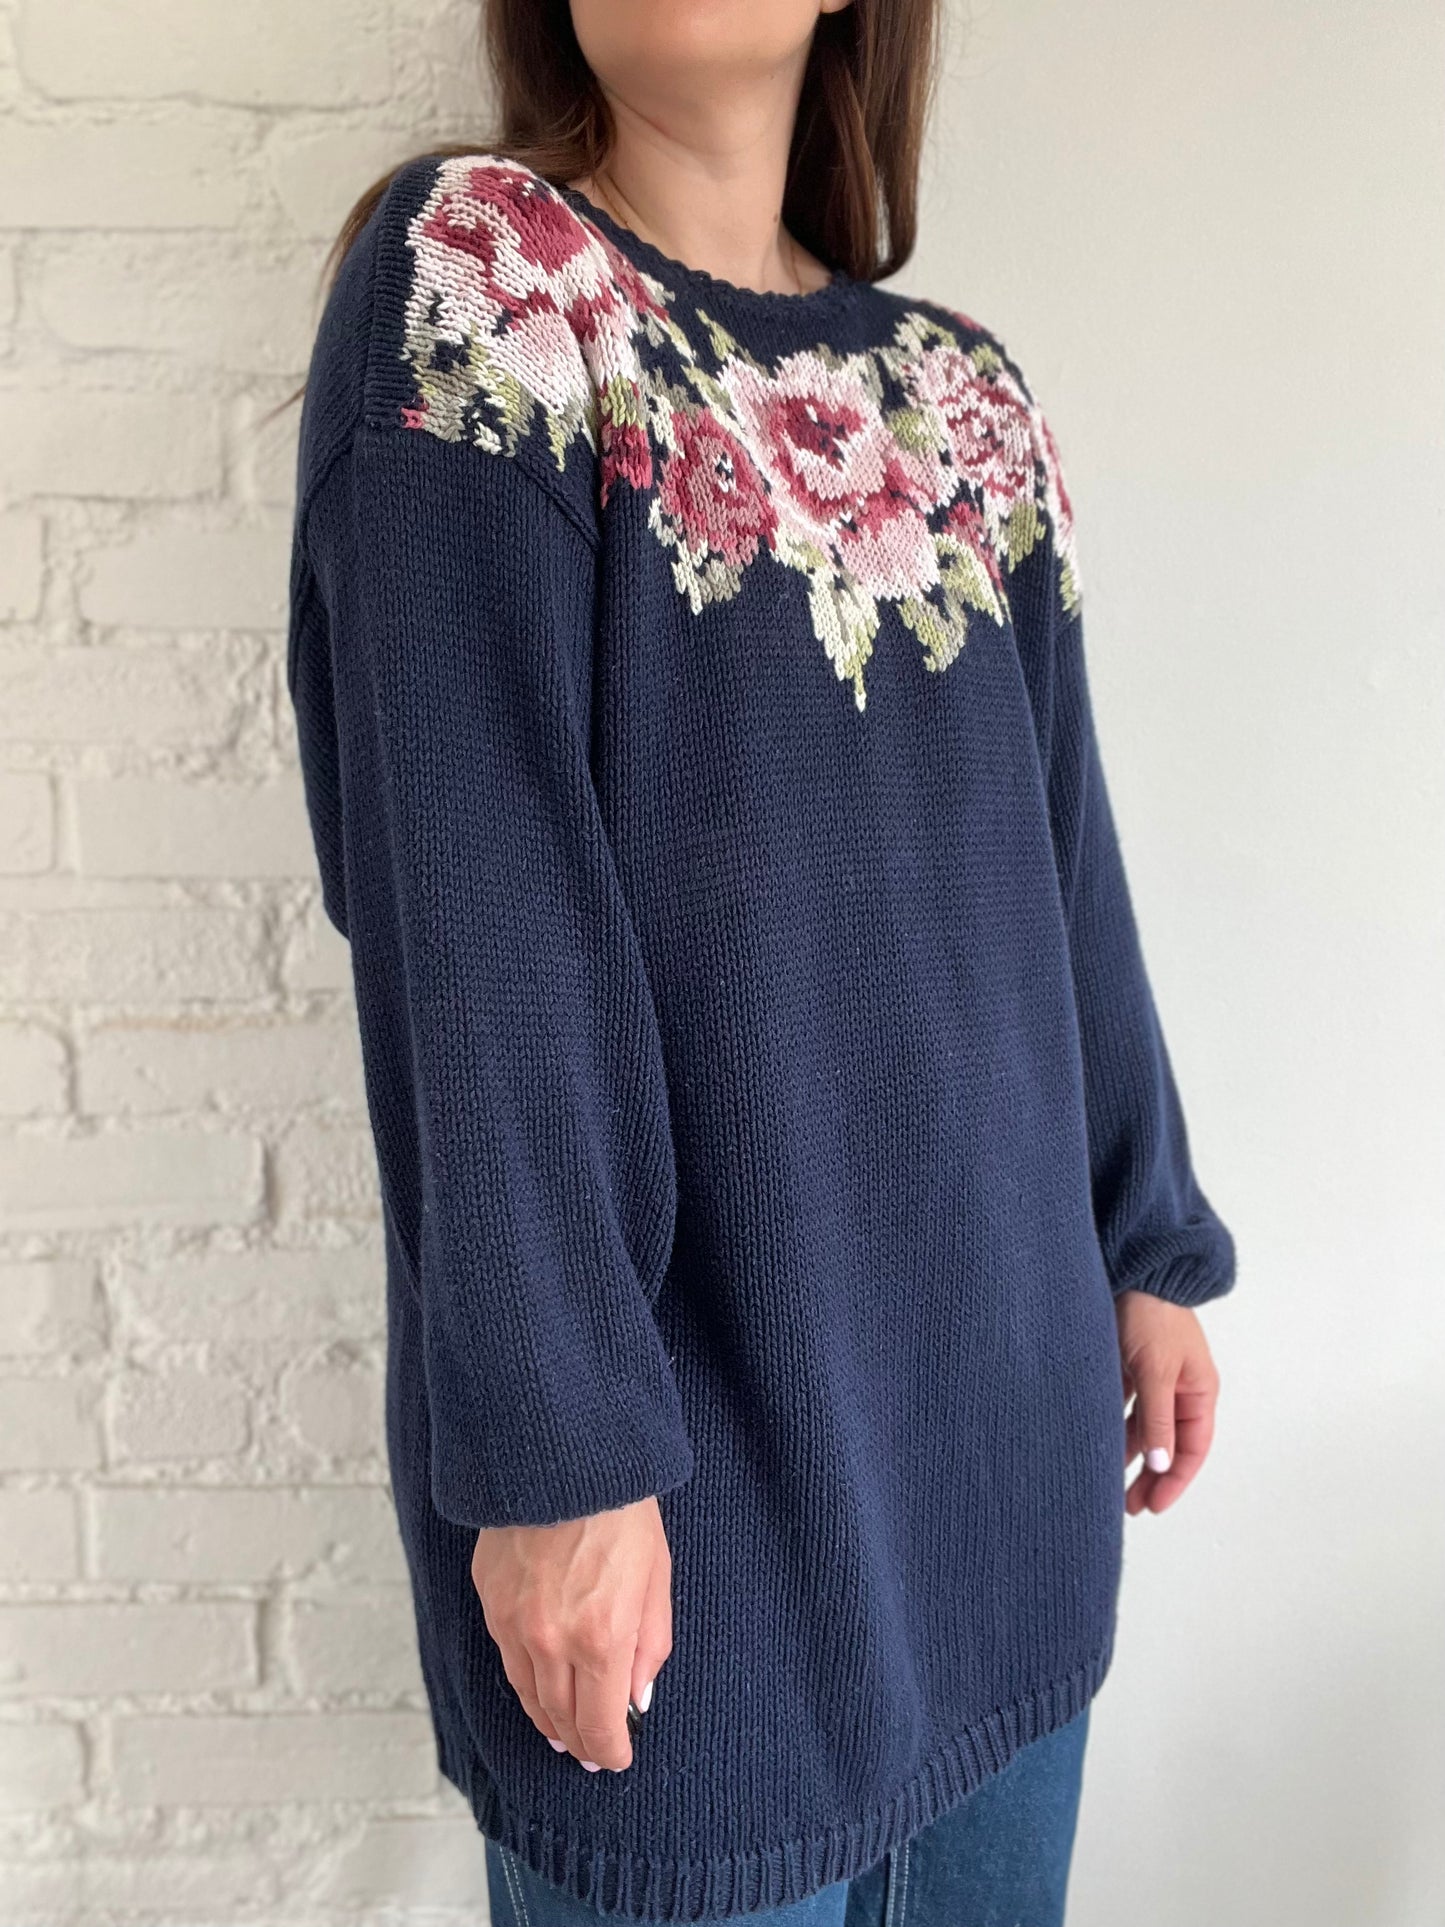 Pink Roses Crochet Sweater - XL/XXL